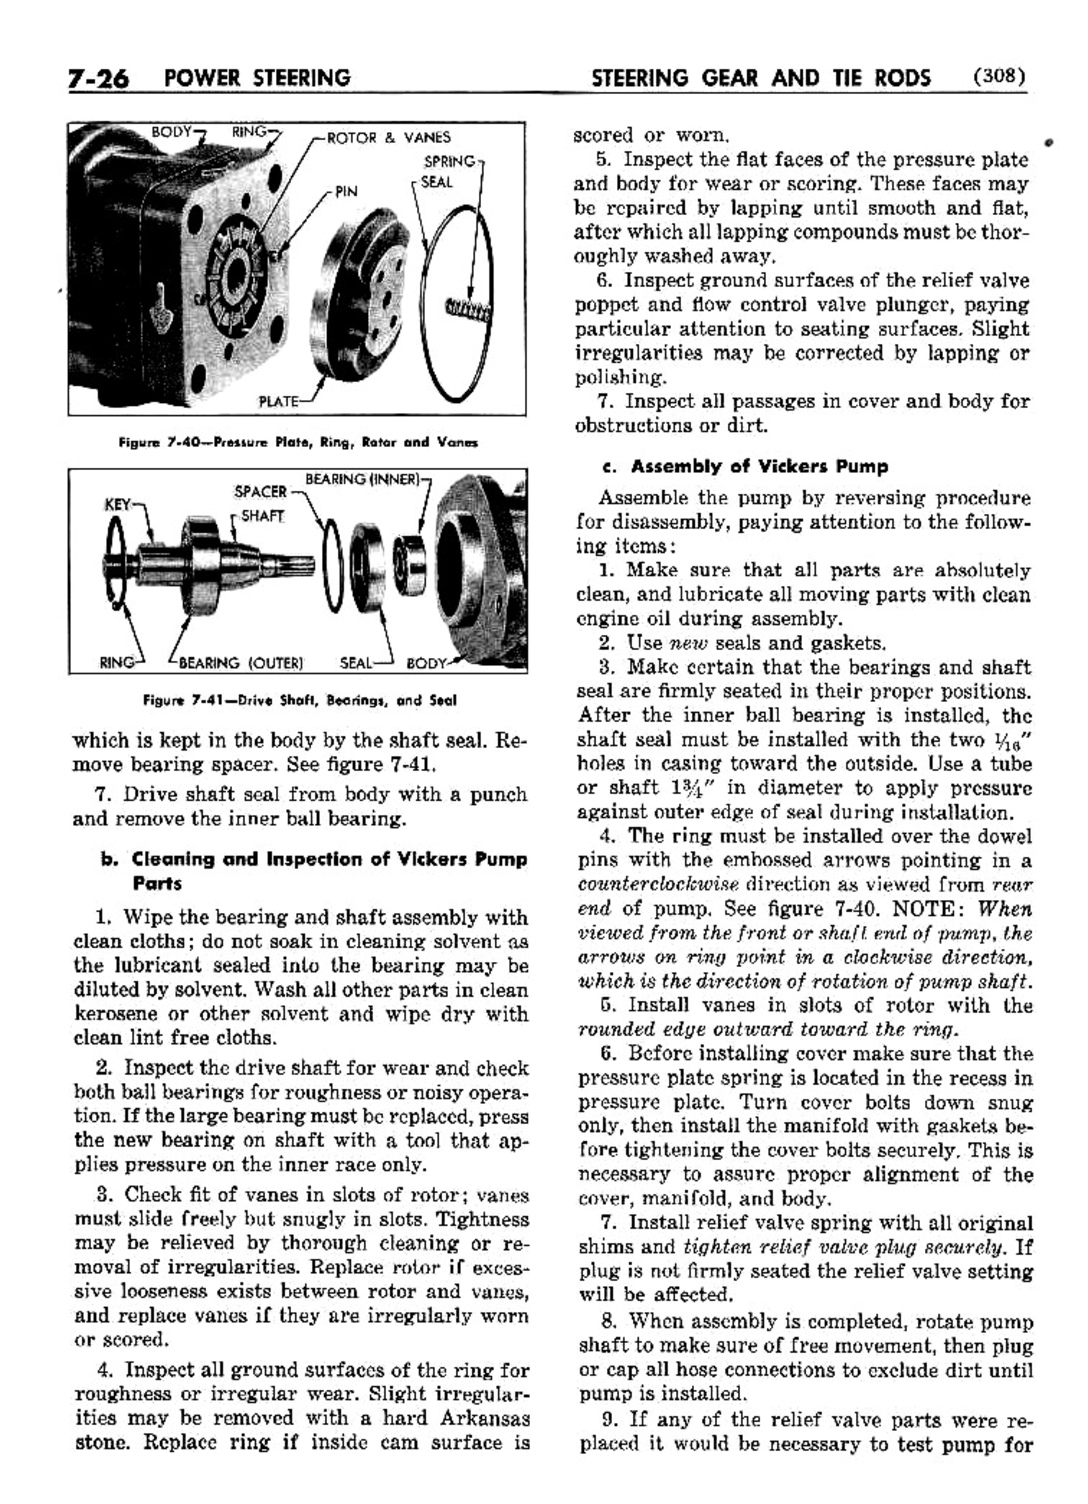 n_08 1952 Buick Shop Manual - Steering-026-026.jpg